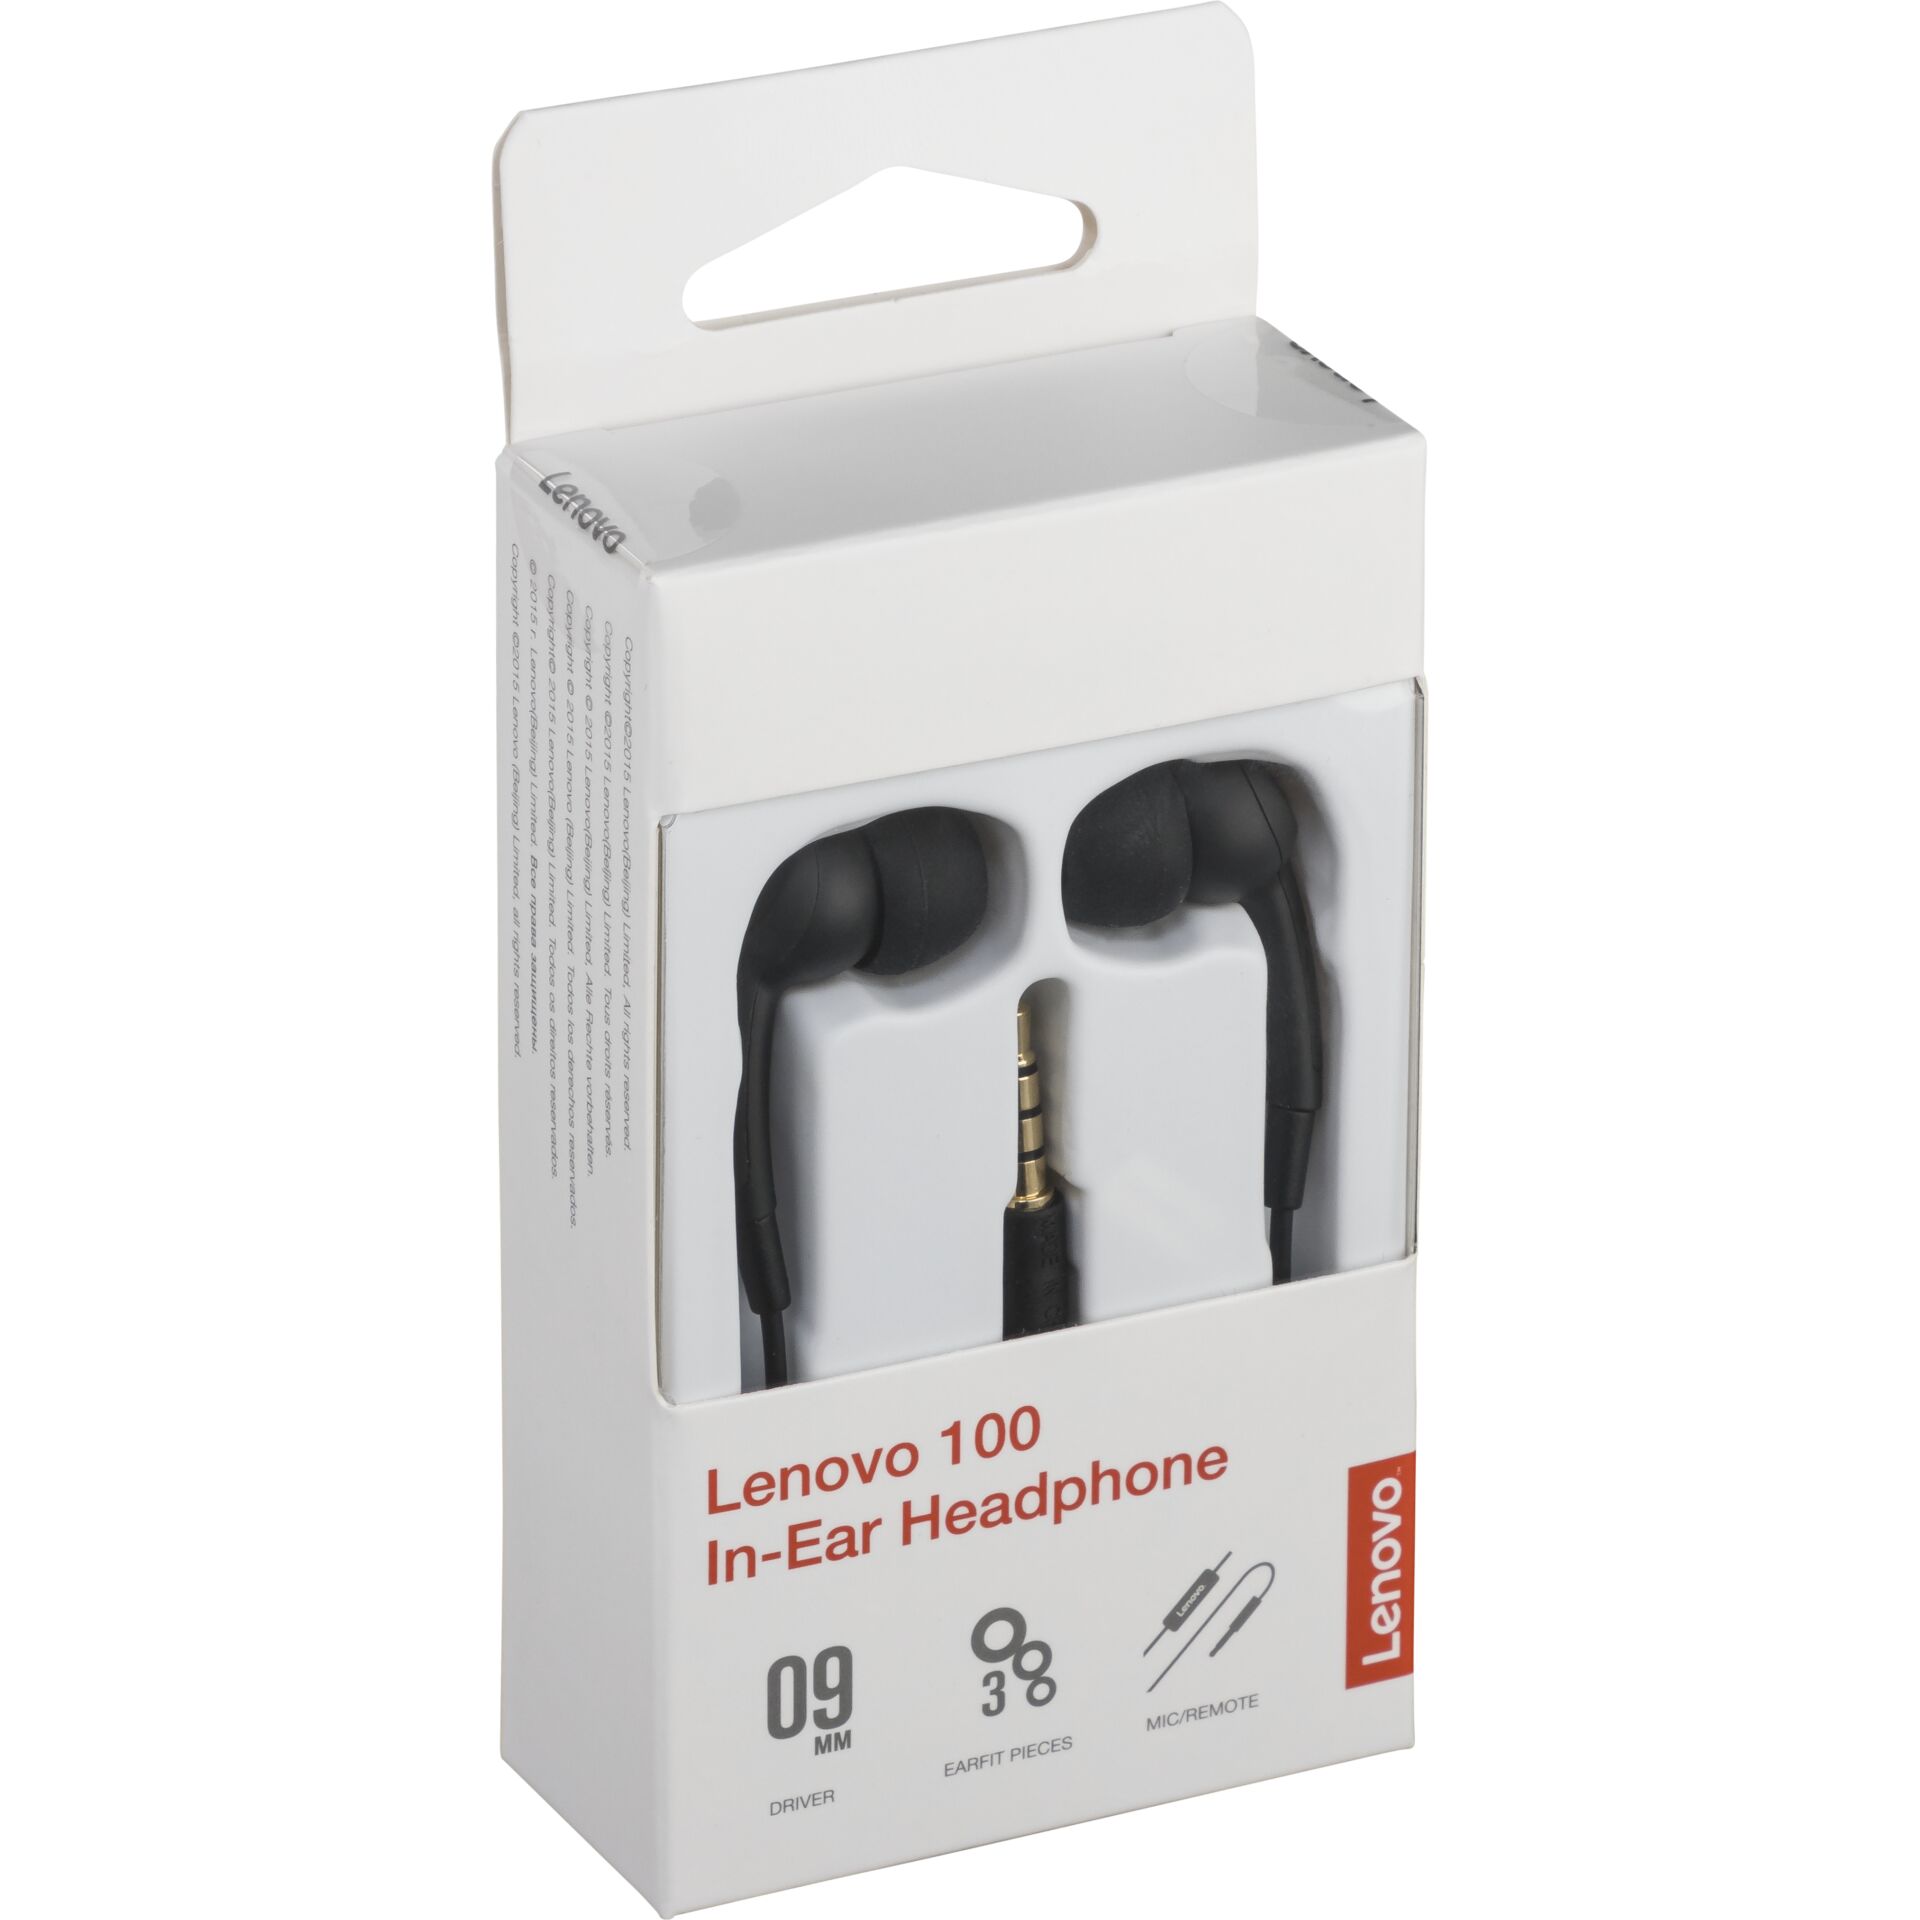 Lenovo 100 In-Ear